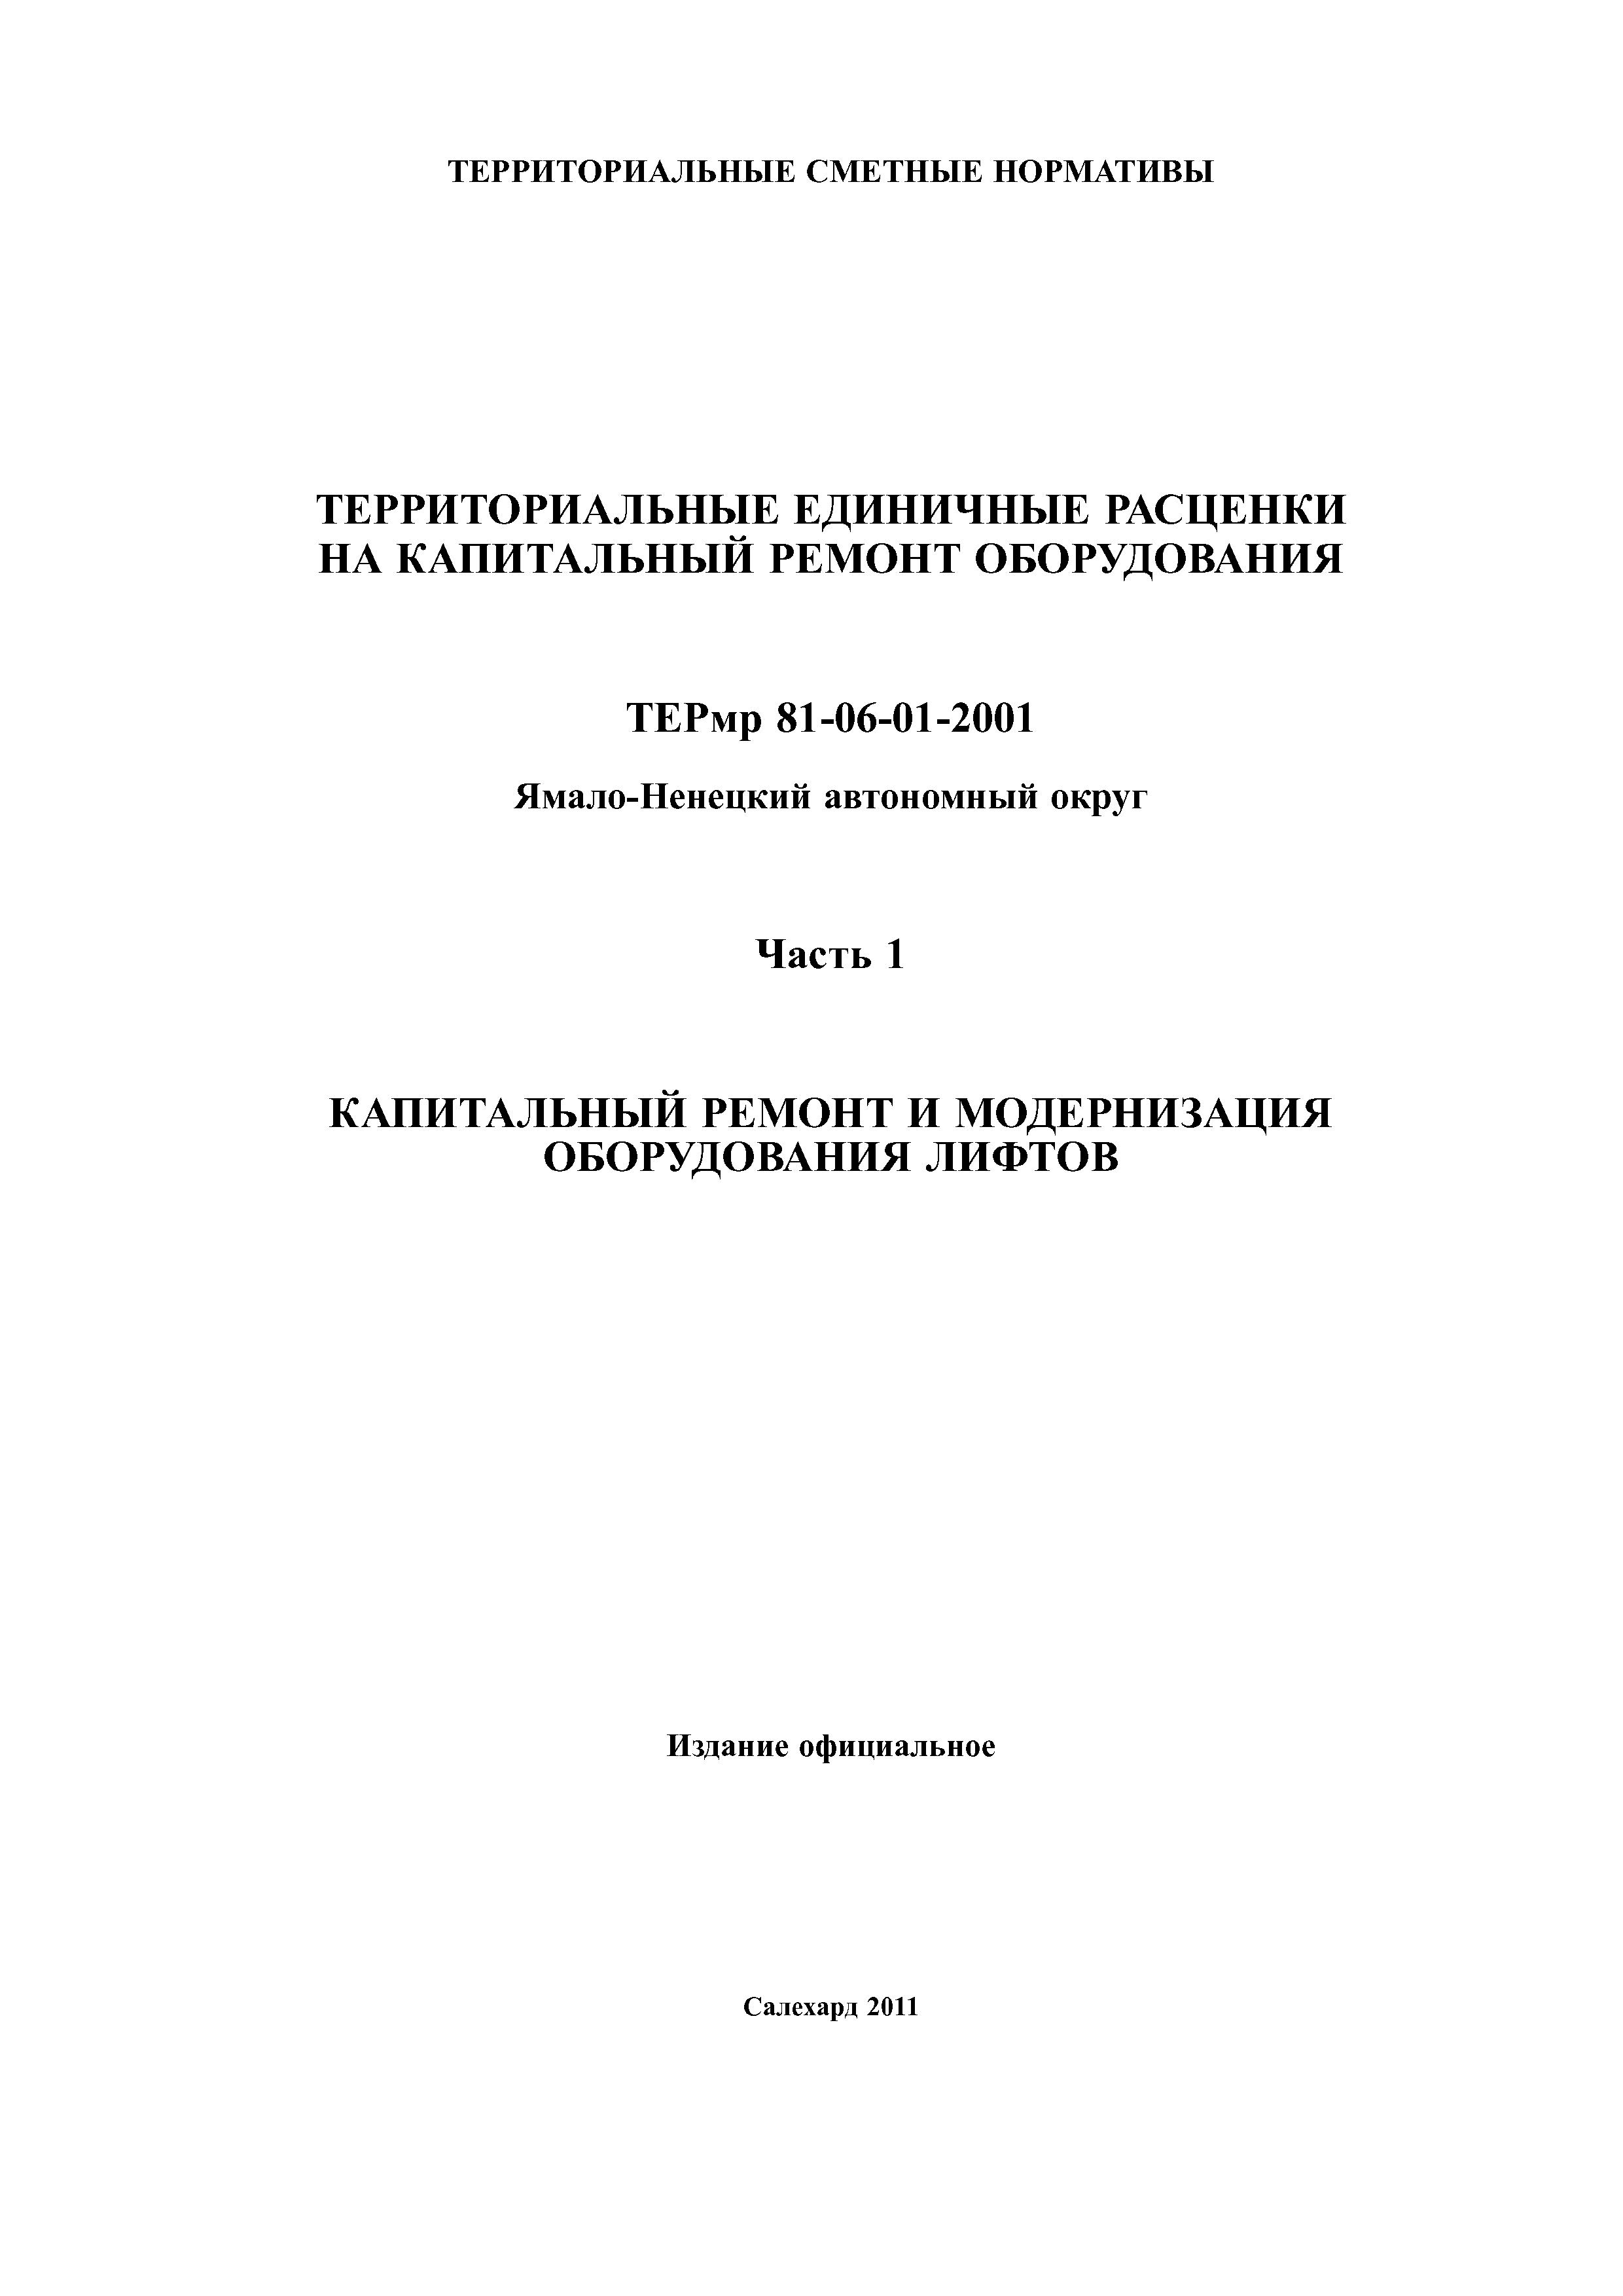 ТЕРмр Ямало-Ненецкий автономный округ 01-2001